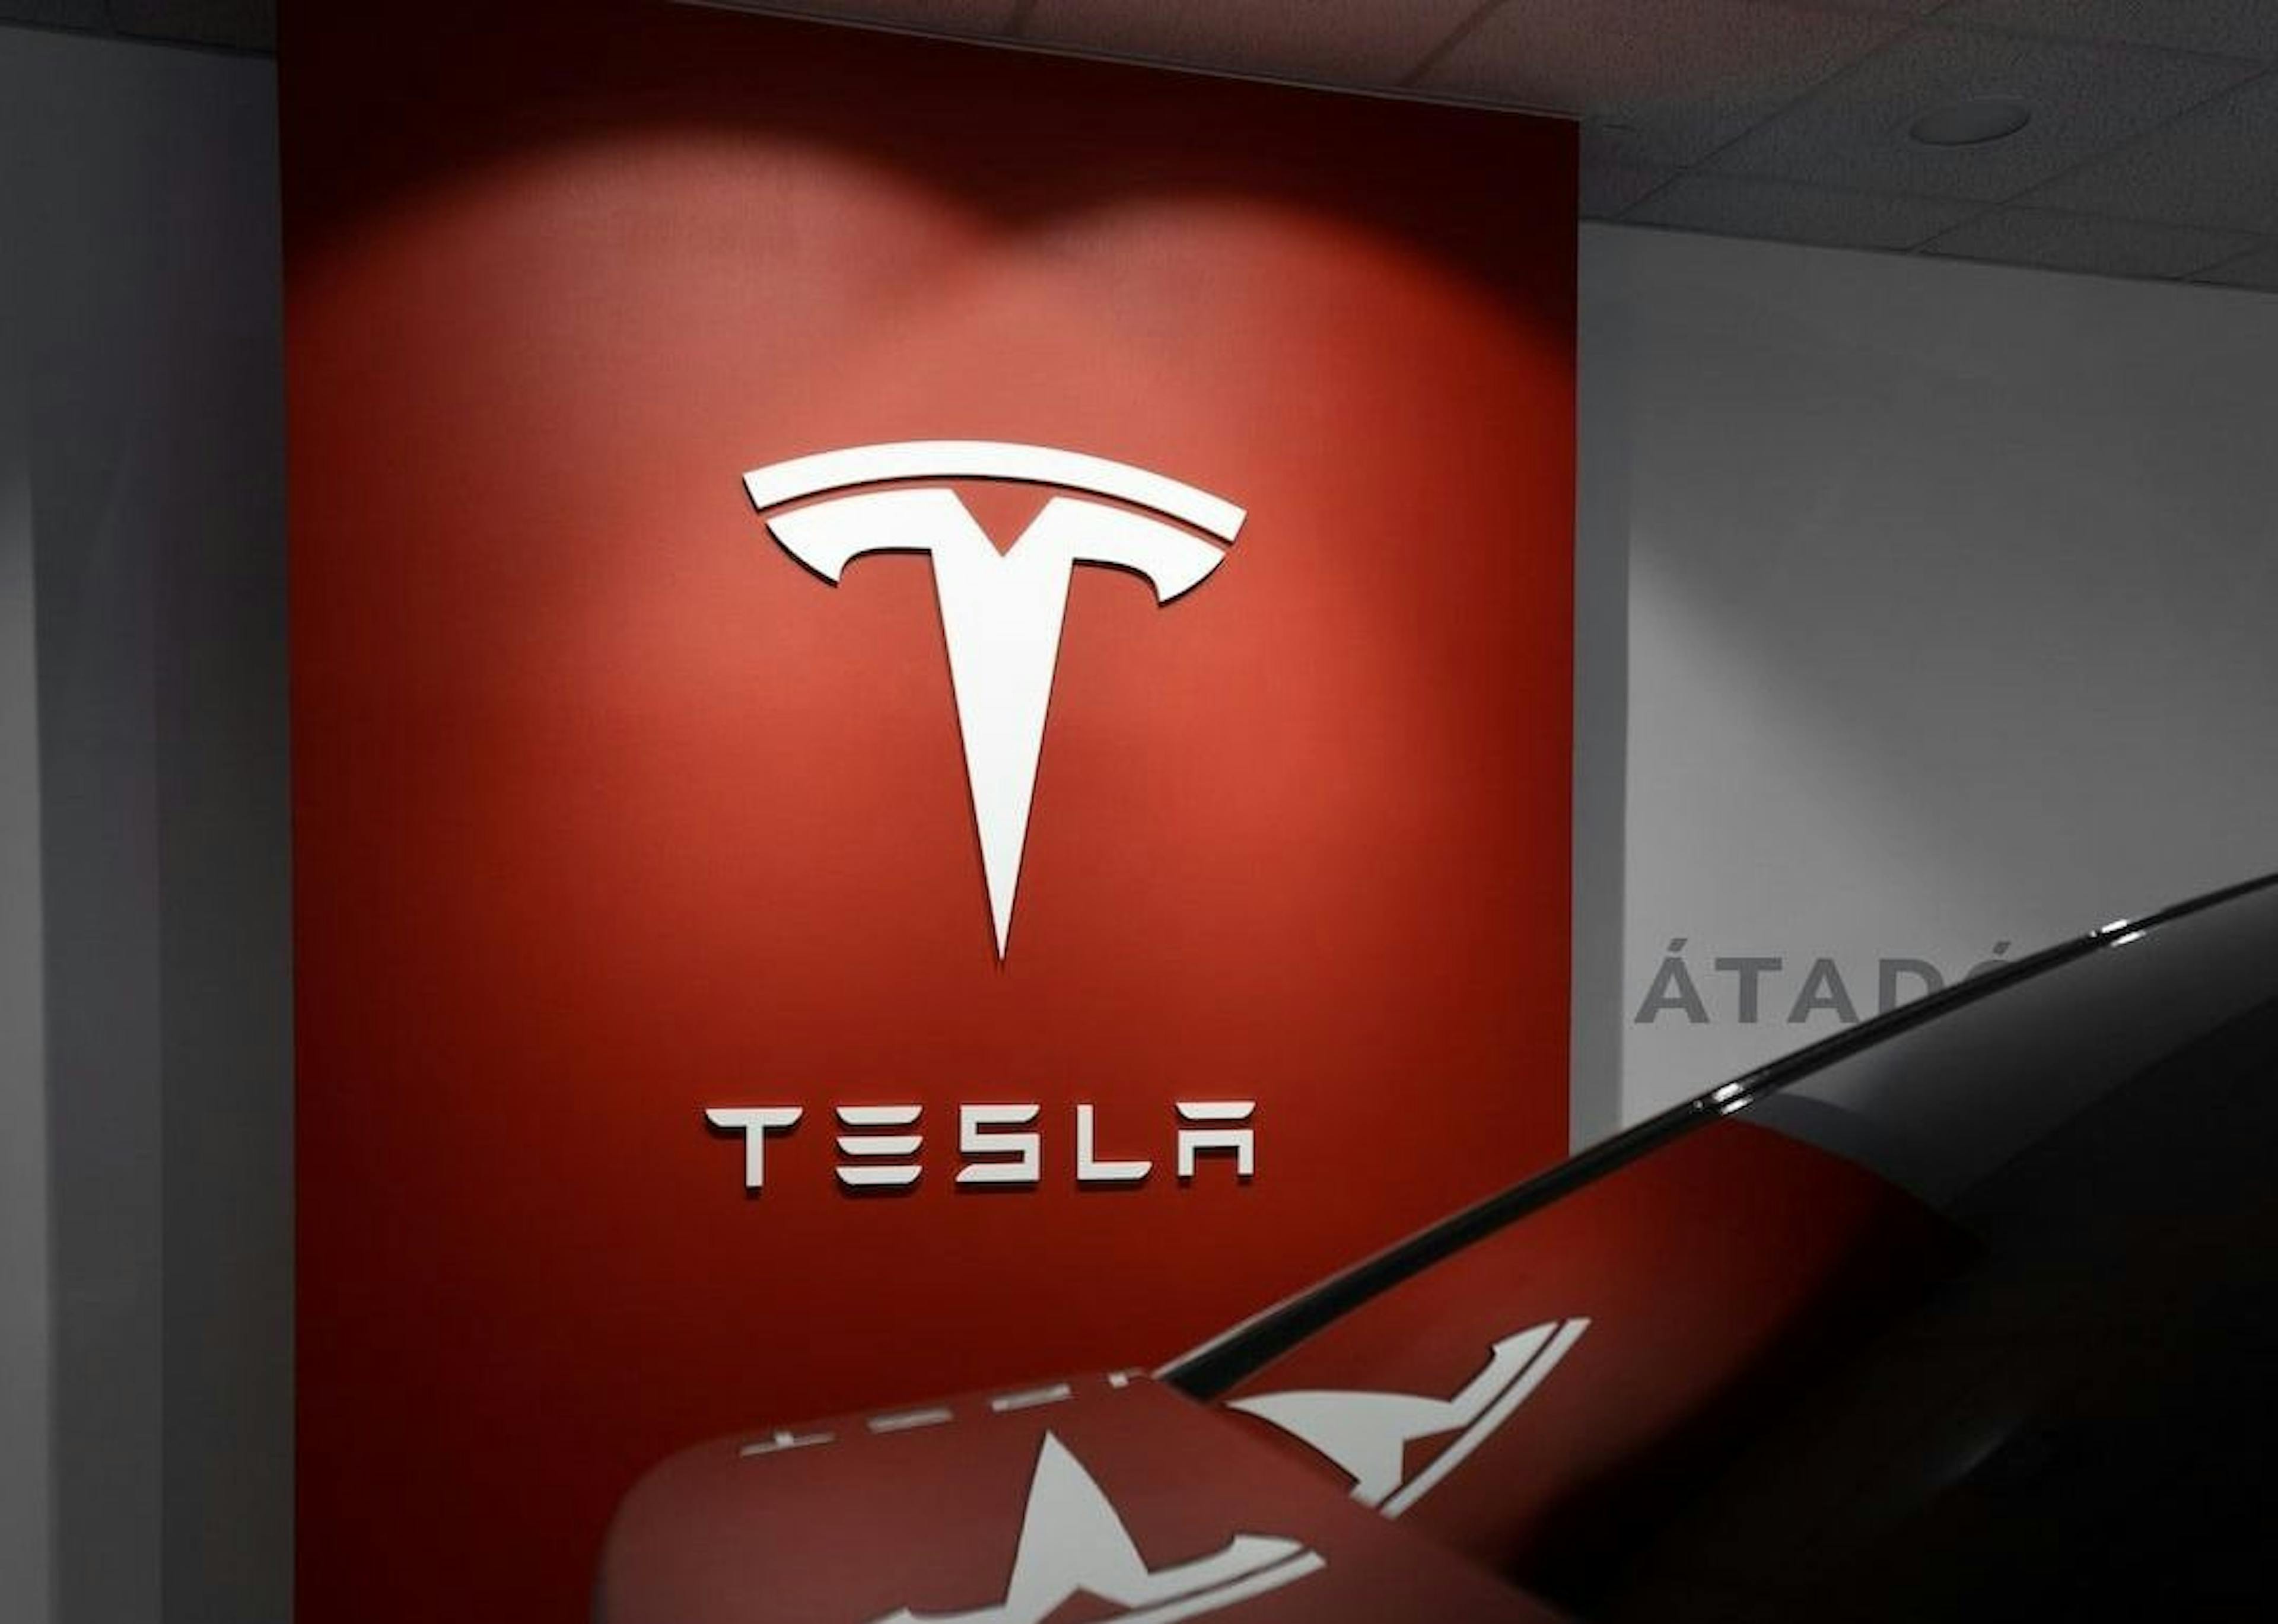 featured image - Tesla xây dựng Gigafactory trị giá 5 tỷ đô la ở Mexico